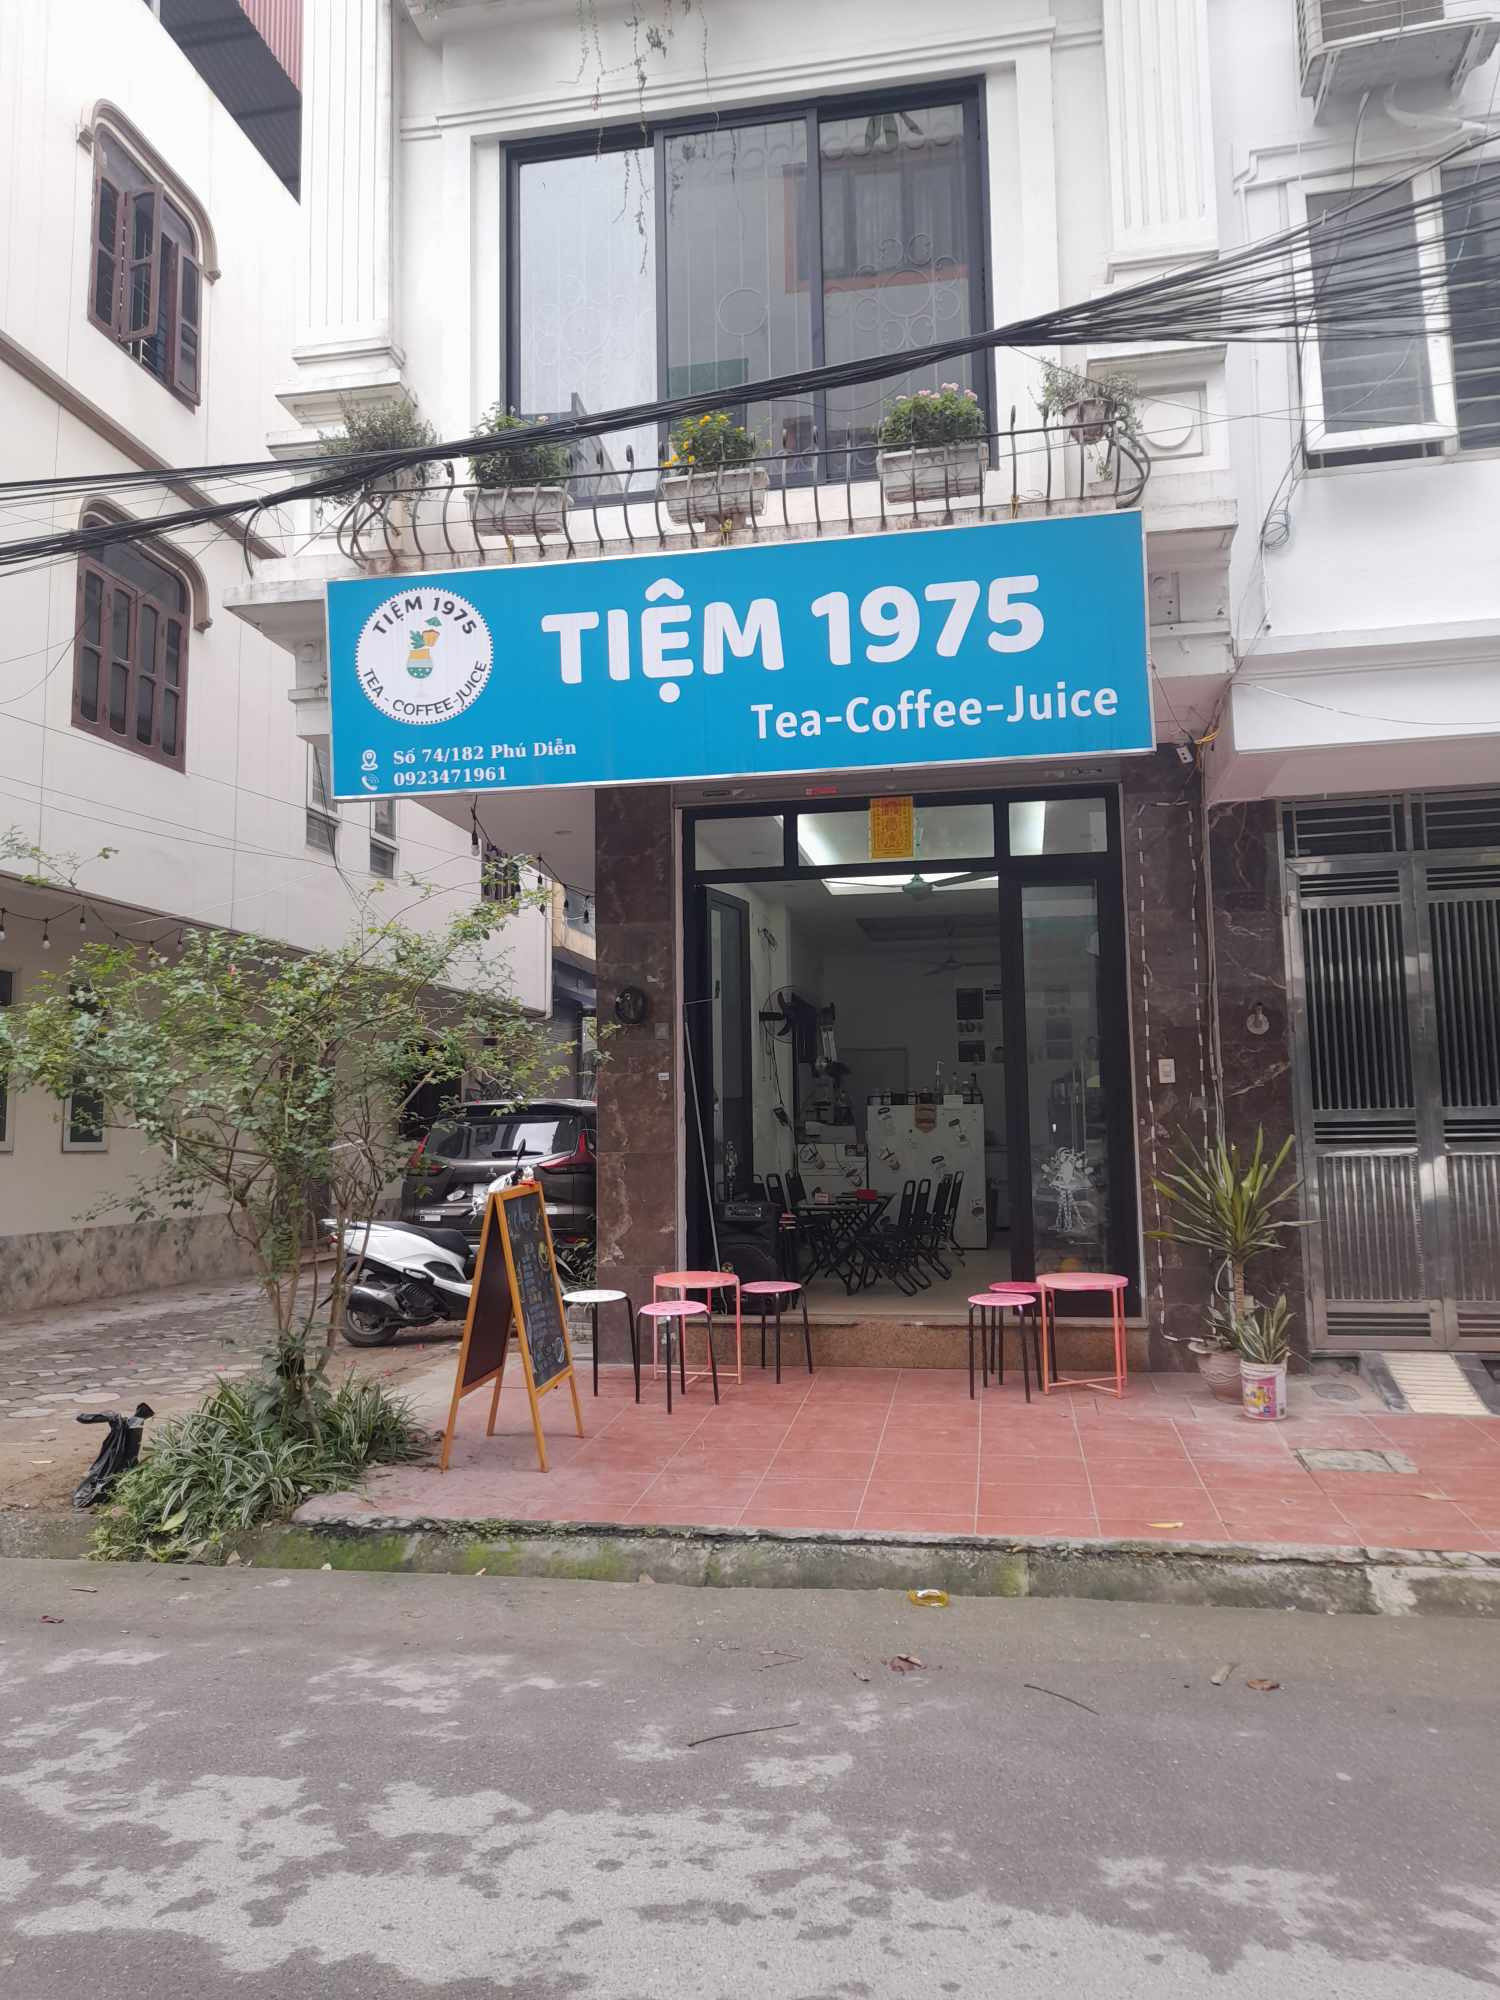 Chuyển nhượng quán cafe,trà sữa ,đồ ăn vặt Địa chỉ : 72 ngõ 182 Phú Diễn,Bắc Từ Liêm, Hà Nội - Ảnh chính